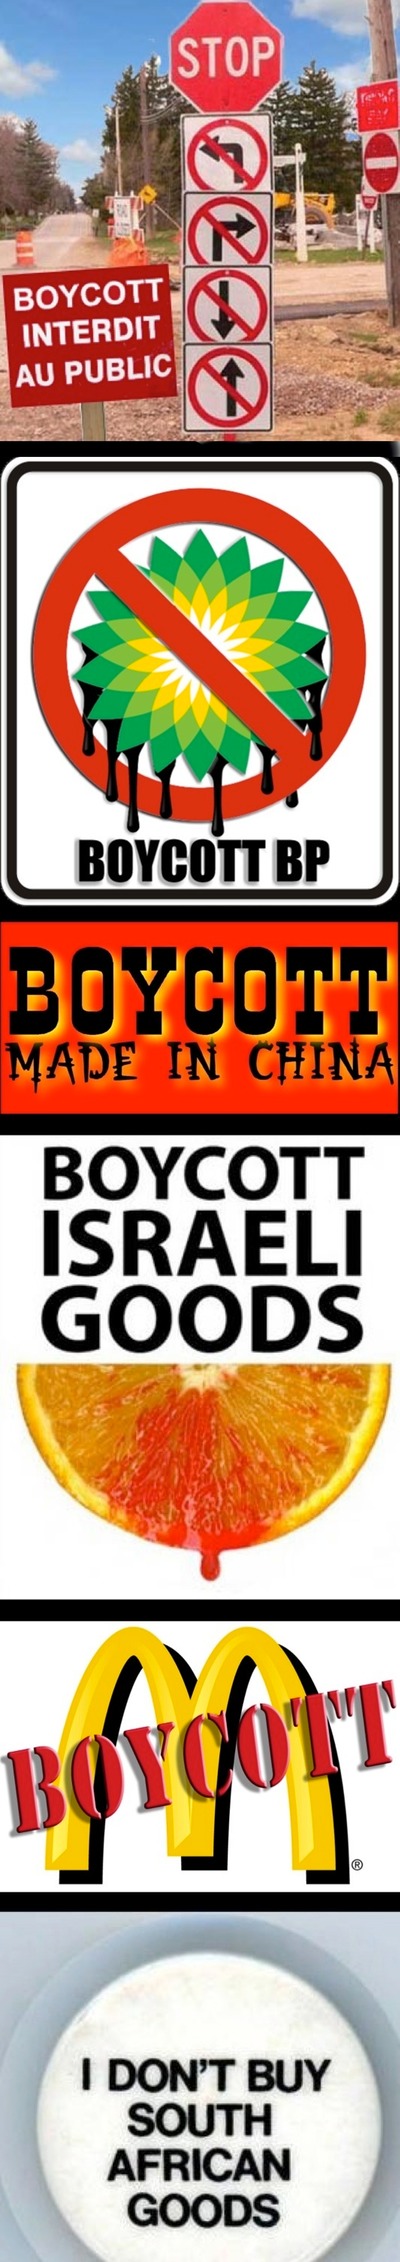 boycotts-panneaux